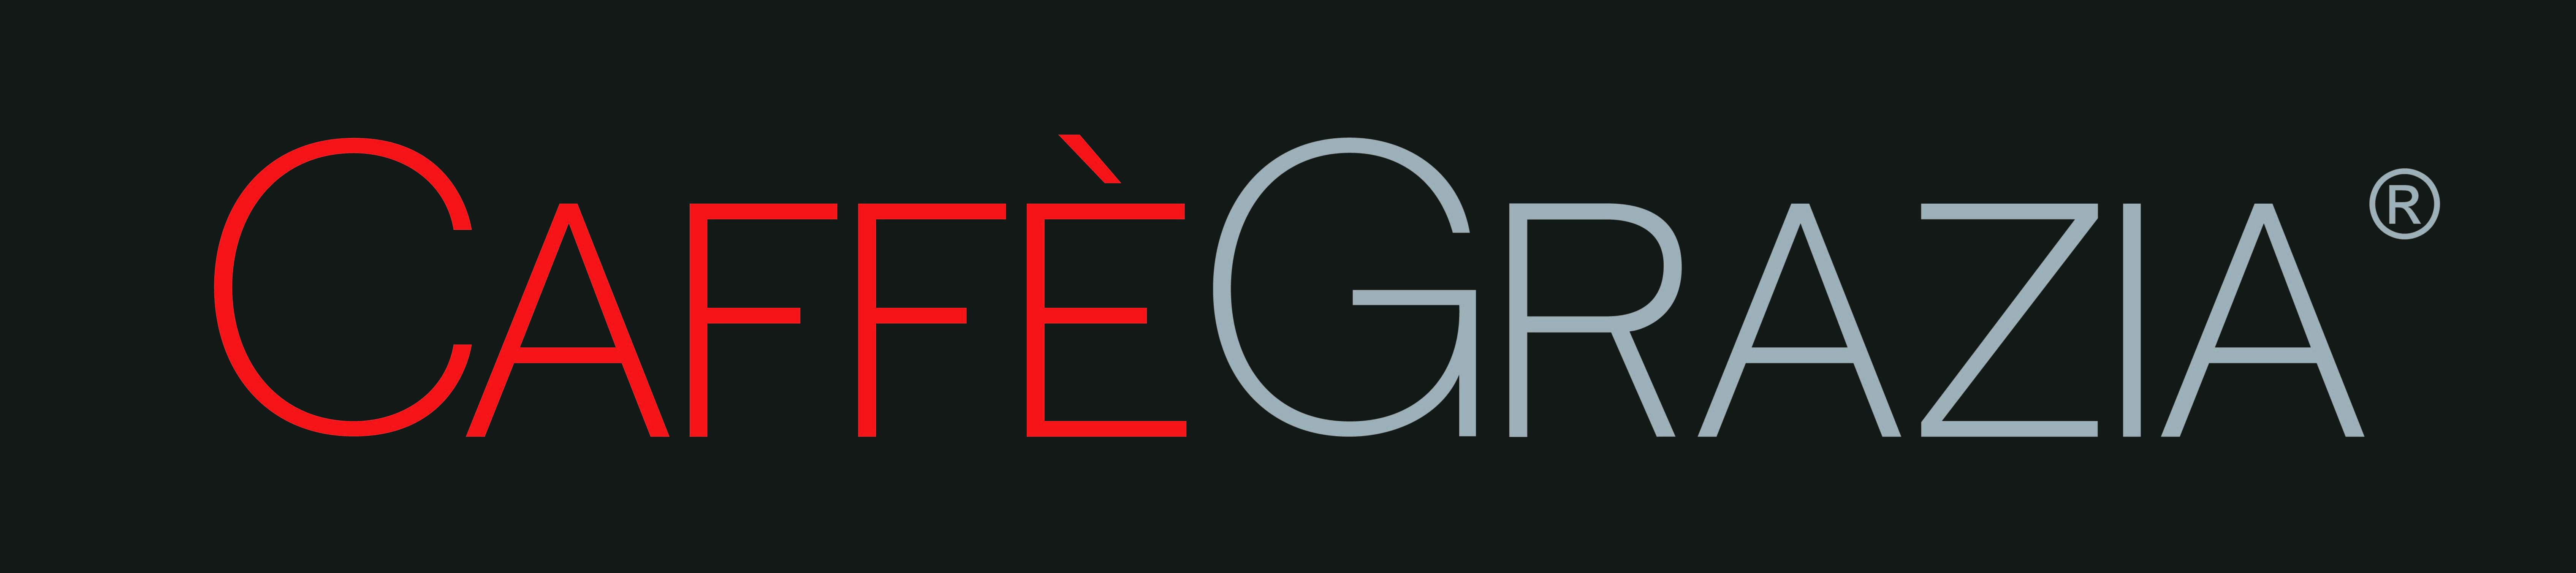 Grazia Logo - Caffe Grazia